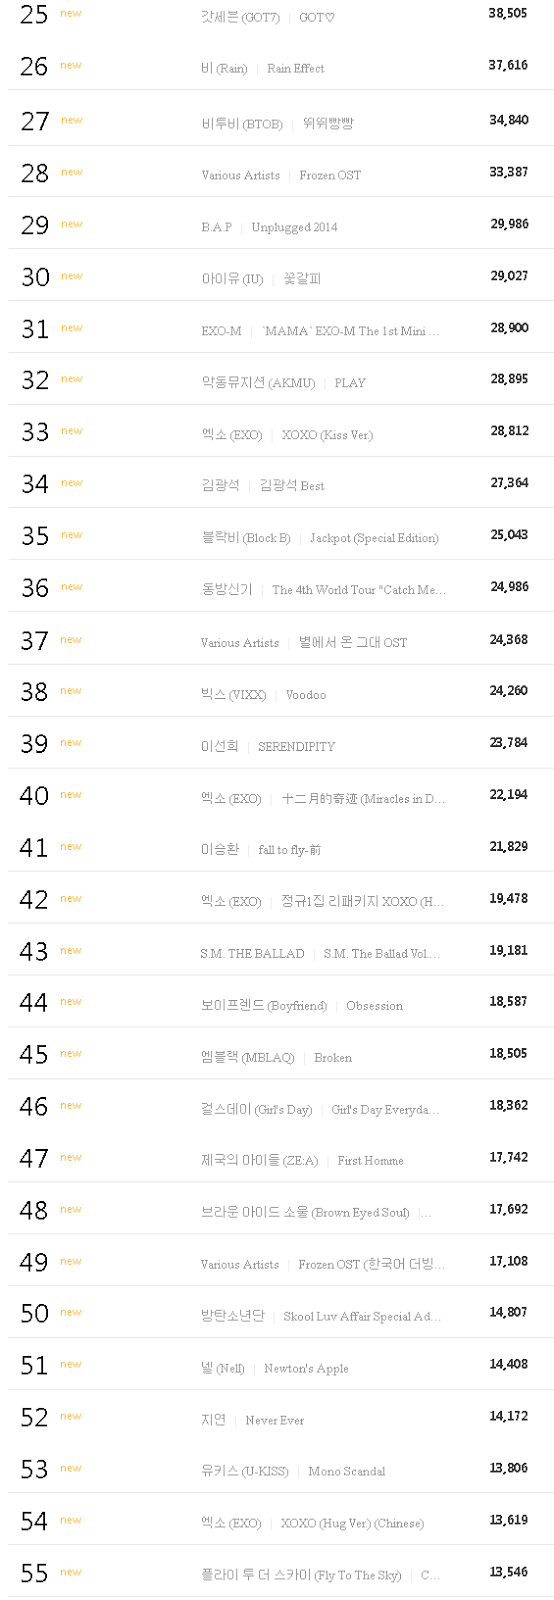 قائمة | مخطط Gaon يصدر قائمة اكثر 100 البوم مبيعا في النصف الاول من 2014  5b509-1